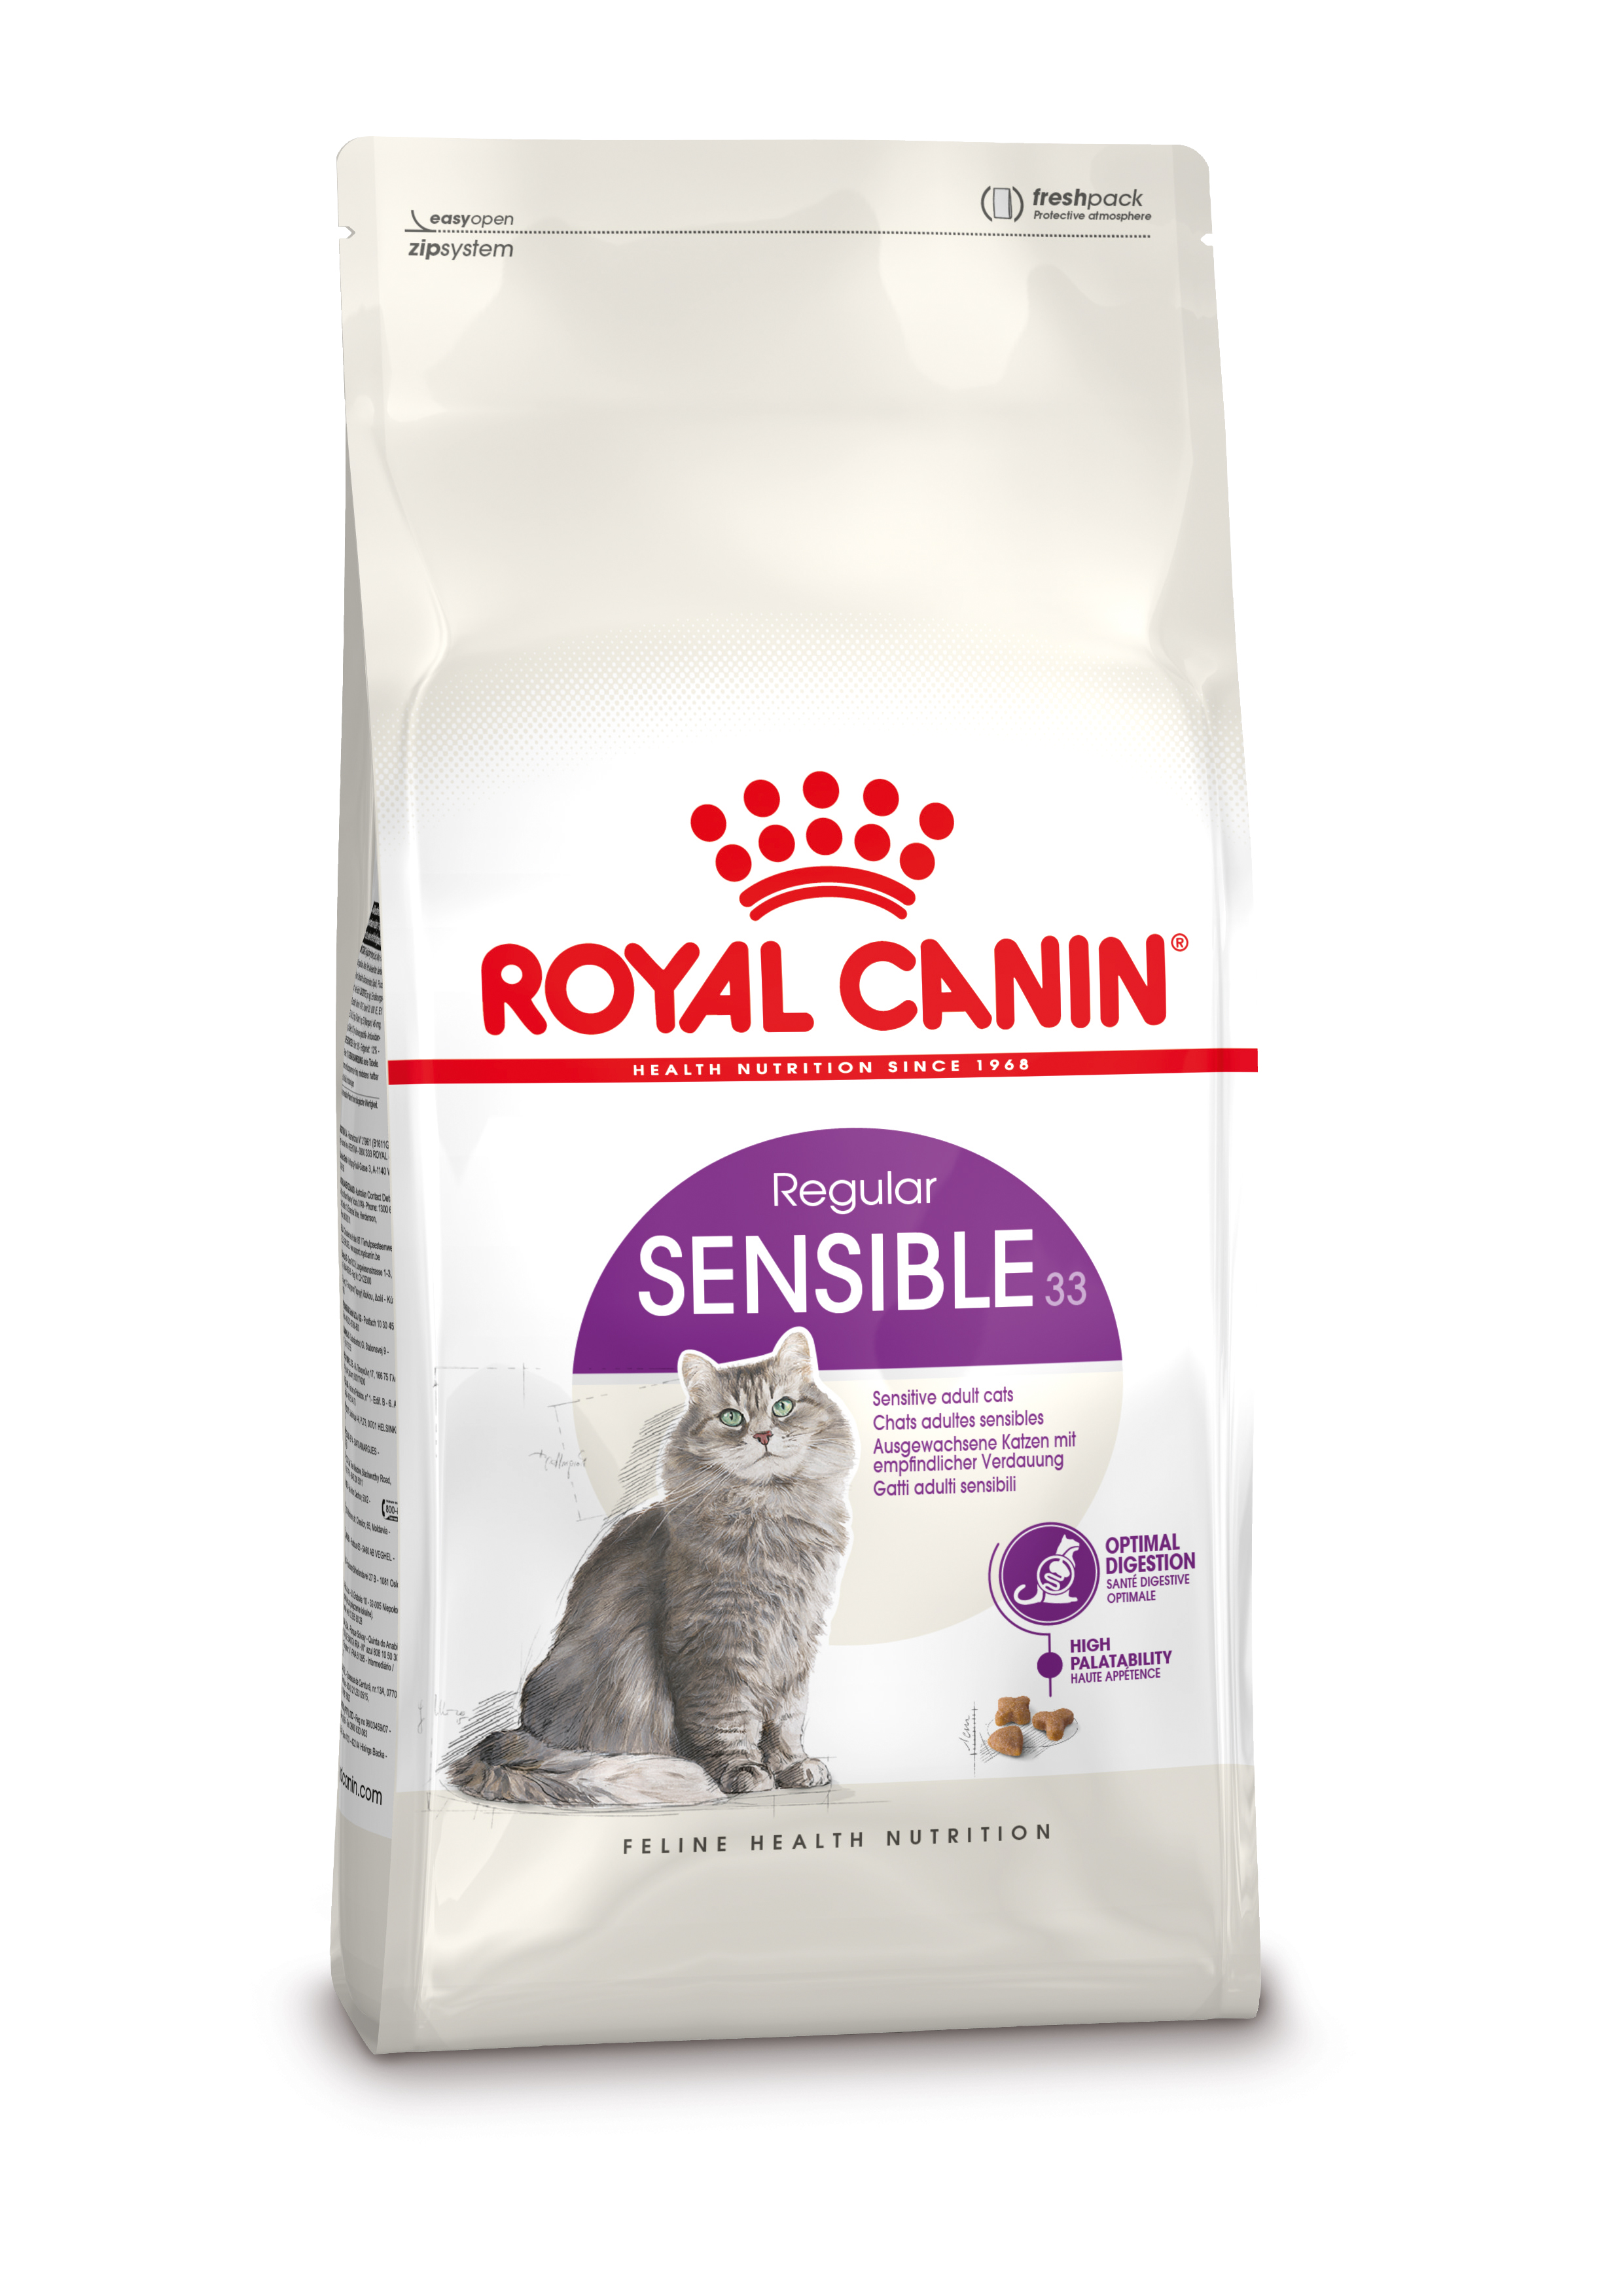 Afbeelding Royal Canin Sensible 33 kattenvoer 10 + 2 kg door Brekz.nl